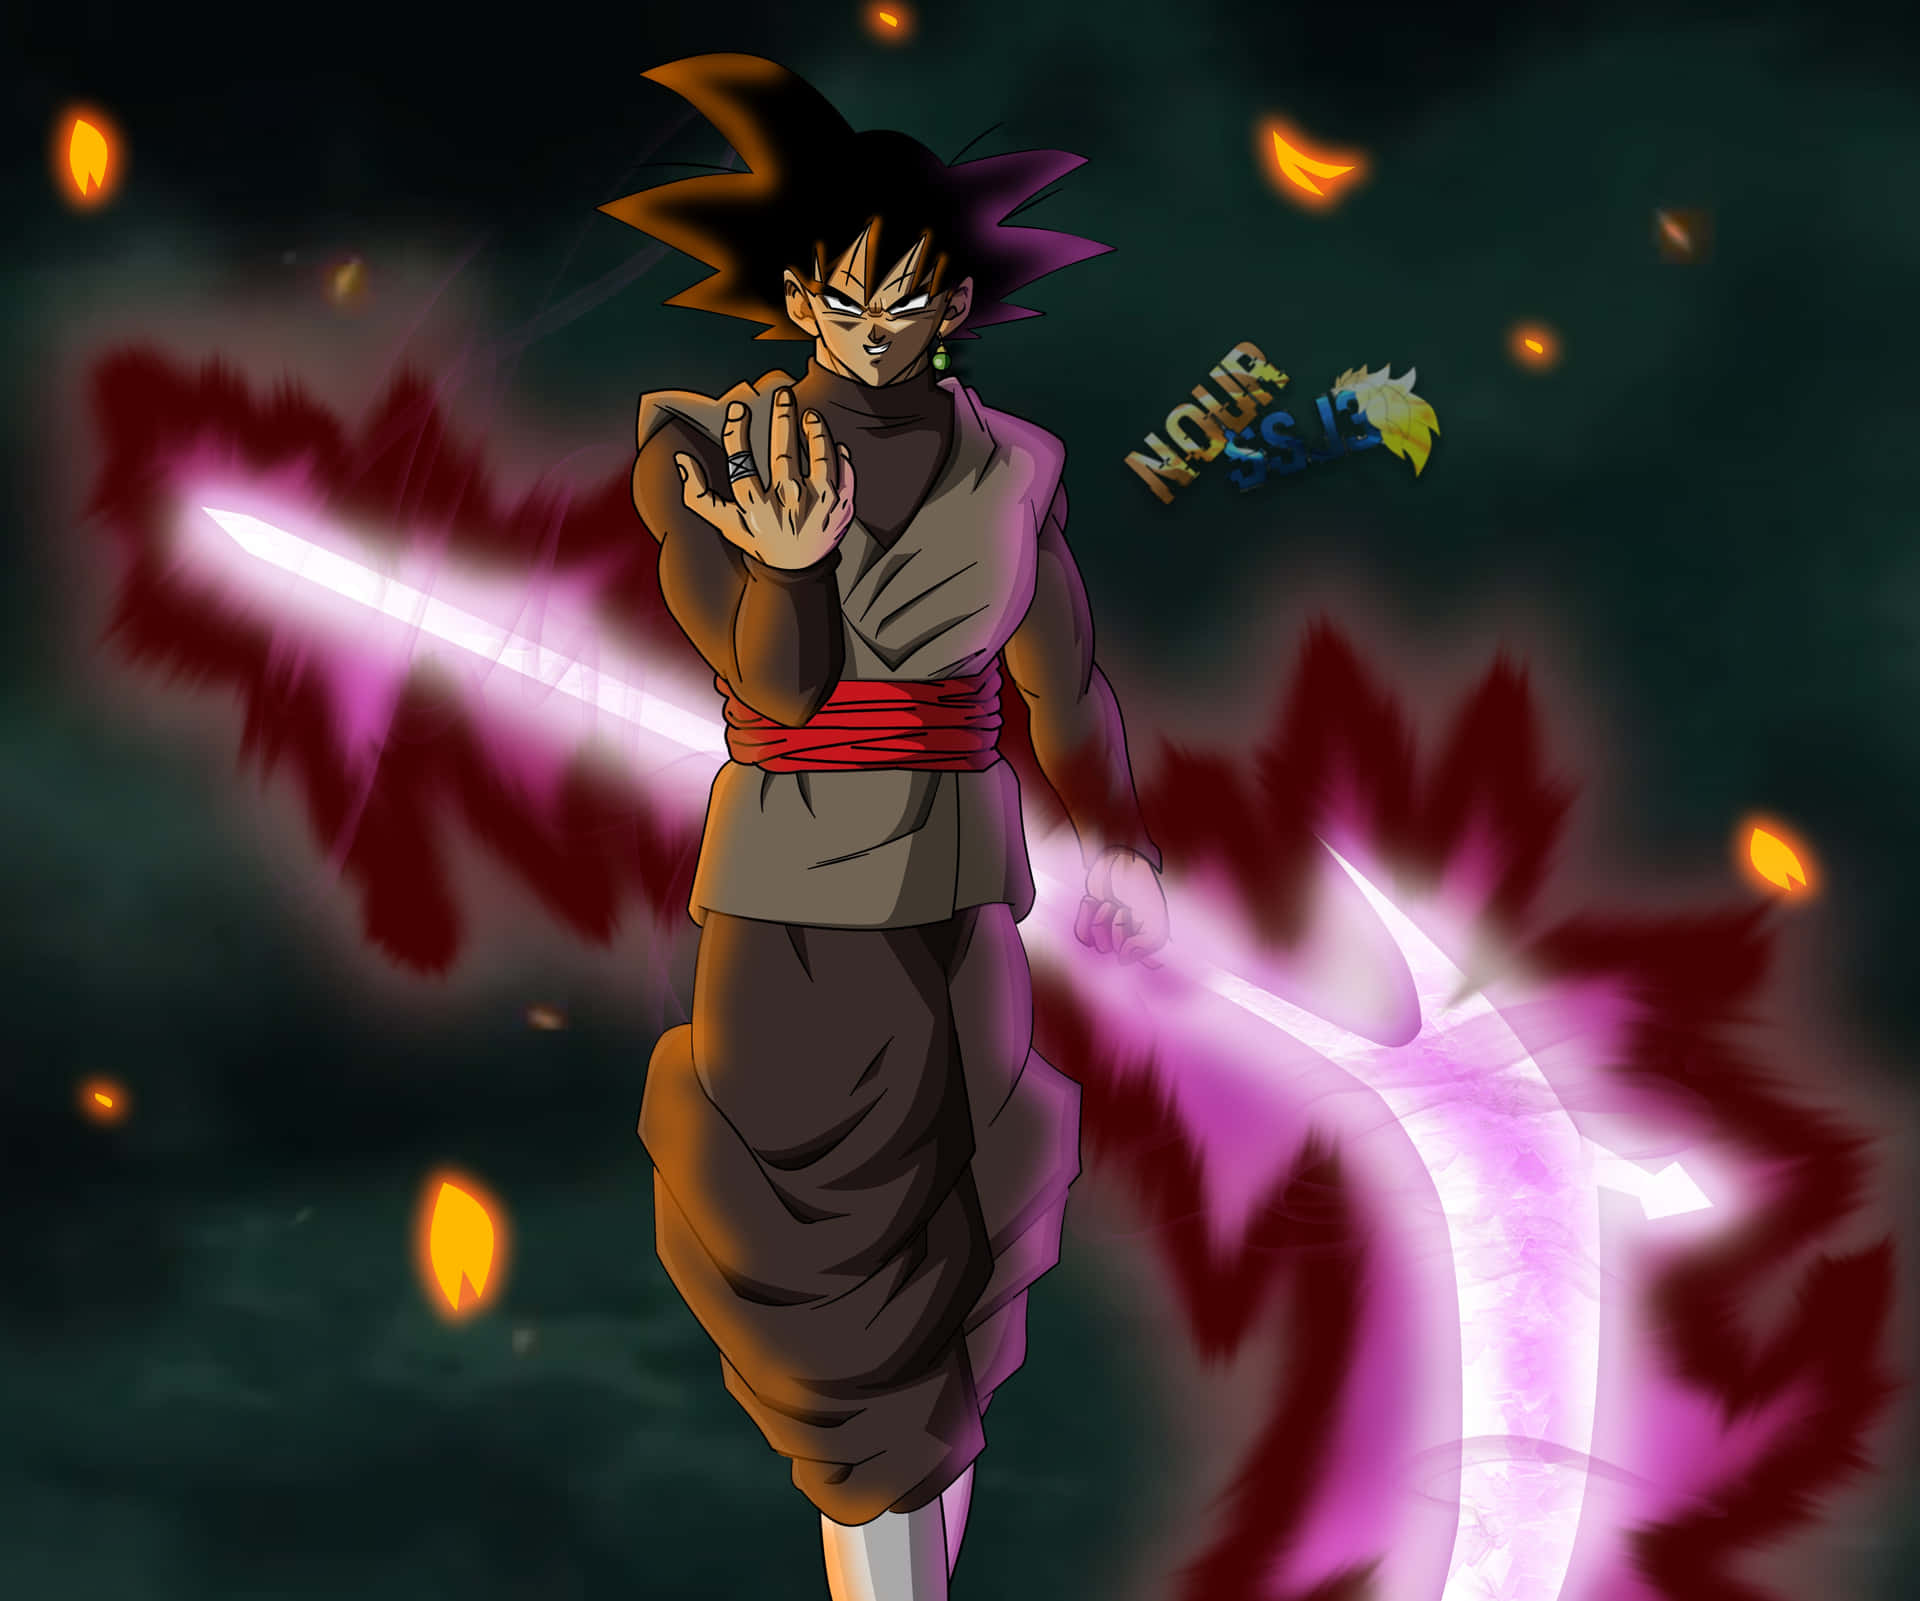 The menacing Goku Black in full power